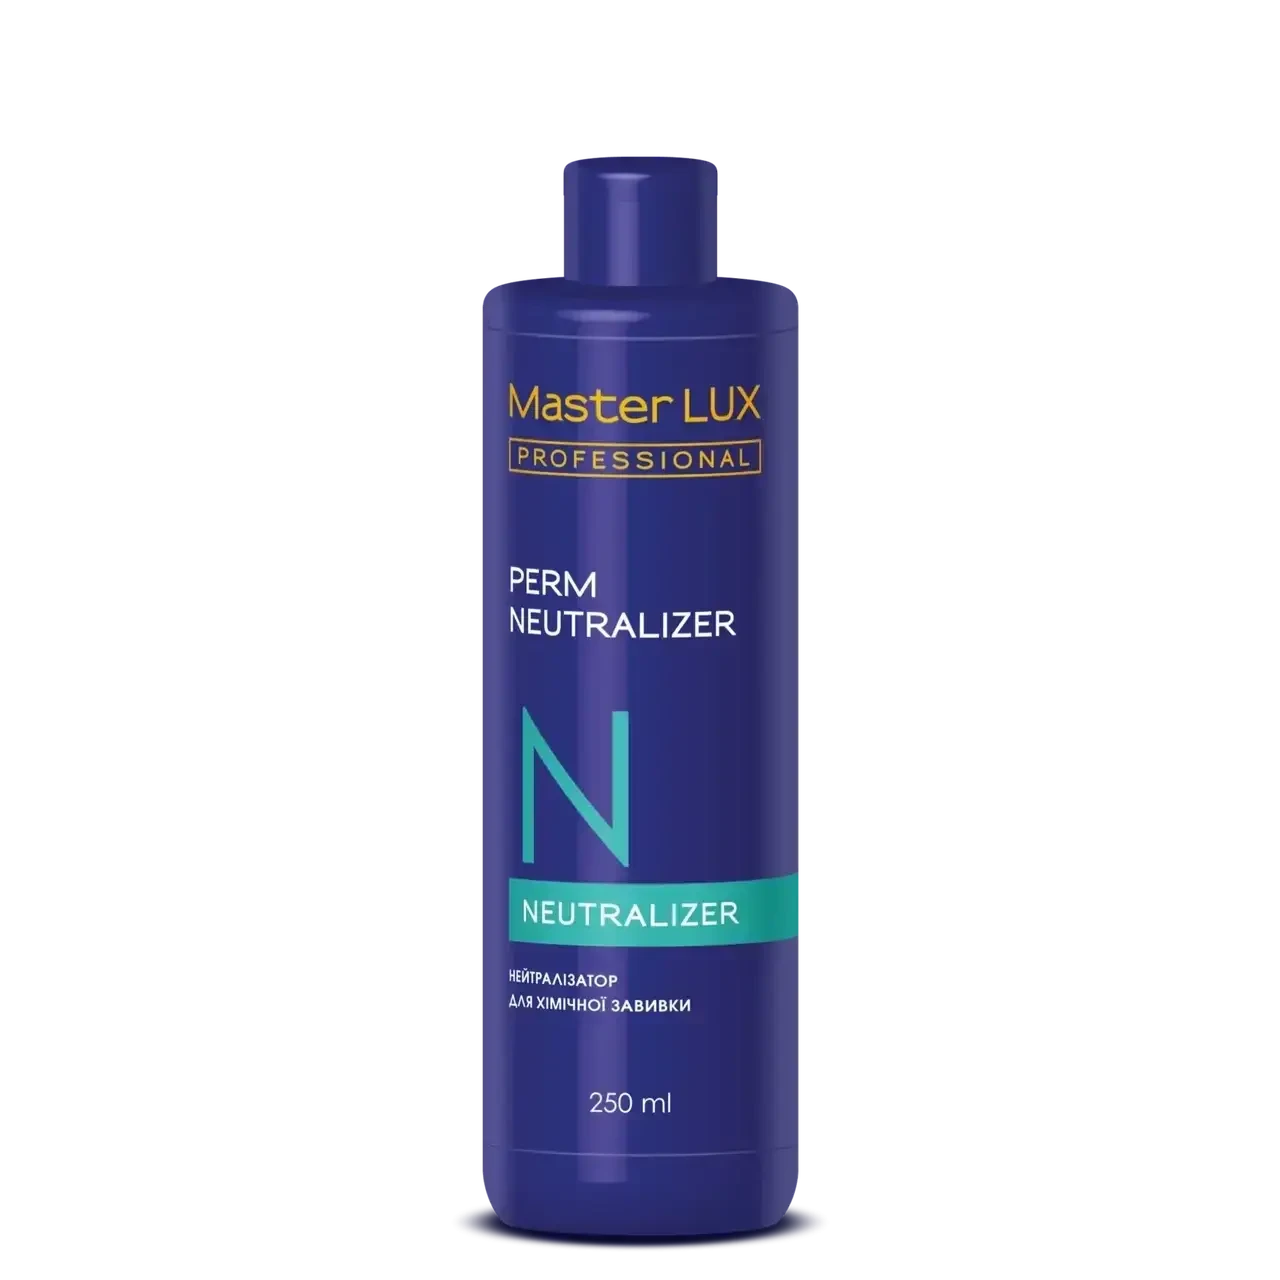 Нейтралізатор для хімічної завивки волосся Master LUX Perm Neutralizer 250 мл.